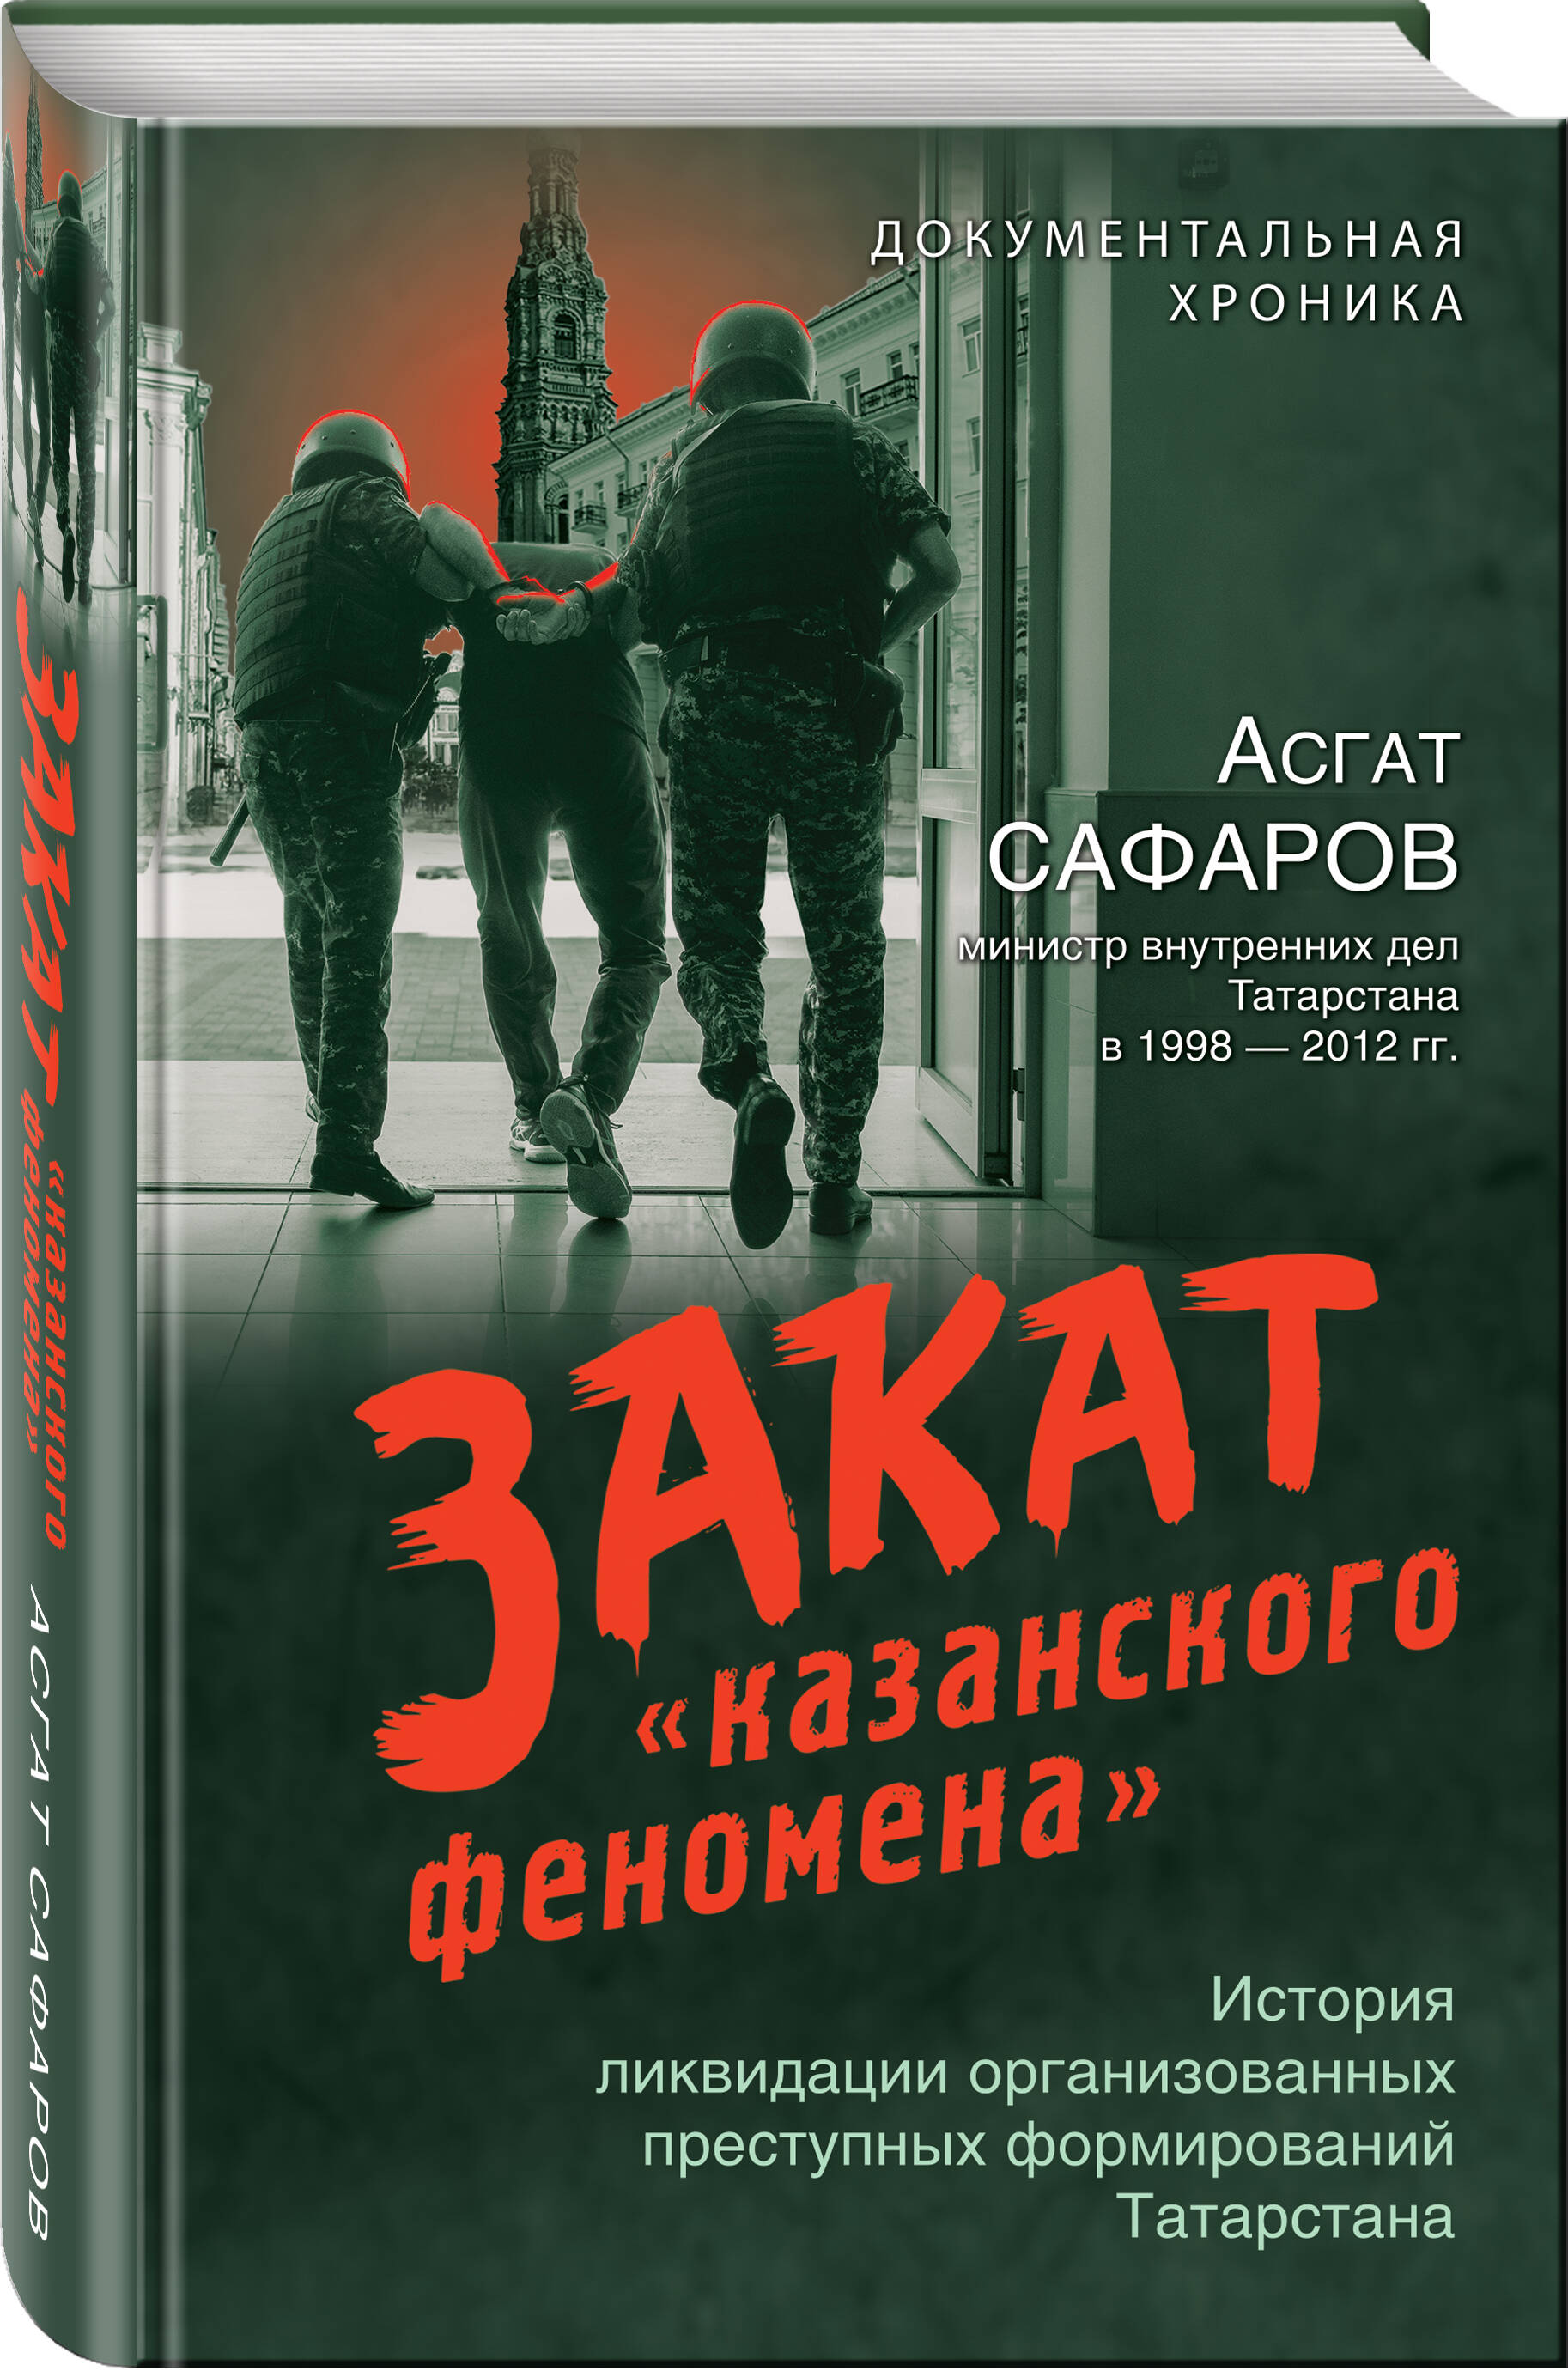 

Закат «казанского феномена»: История ликвидации организованных преступных формирований Татарстана